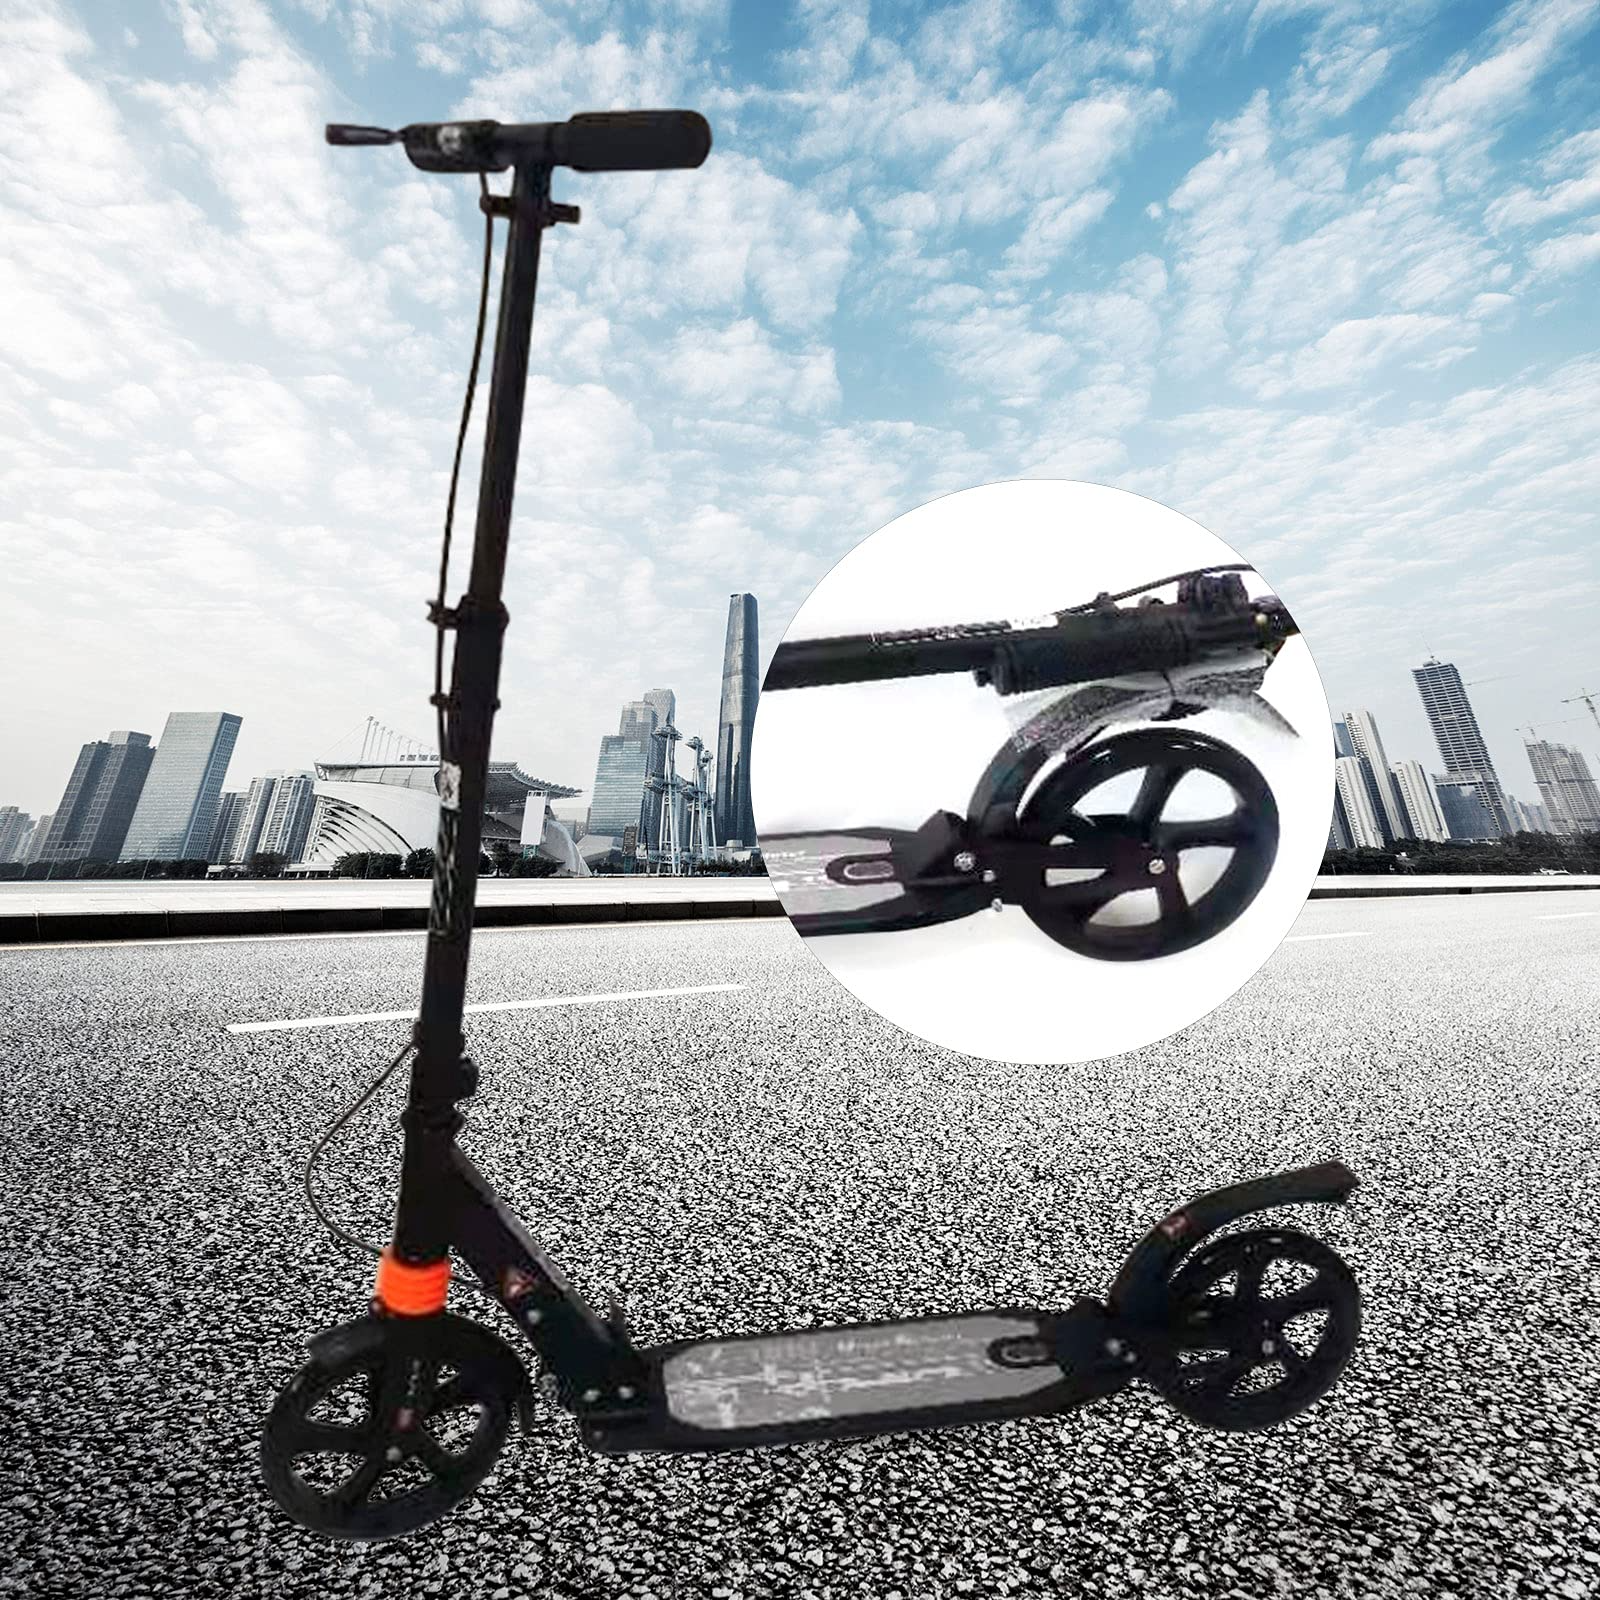 Scooter cittadino pieghevole, scooter a pedali con grande ruota e freno a disco